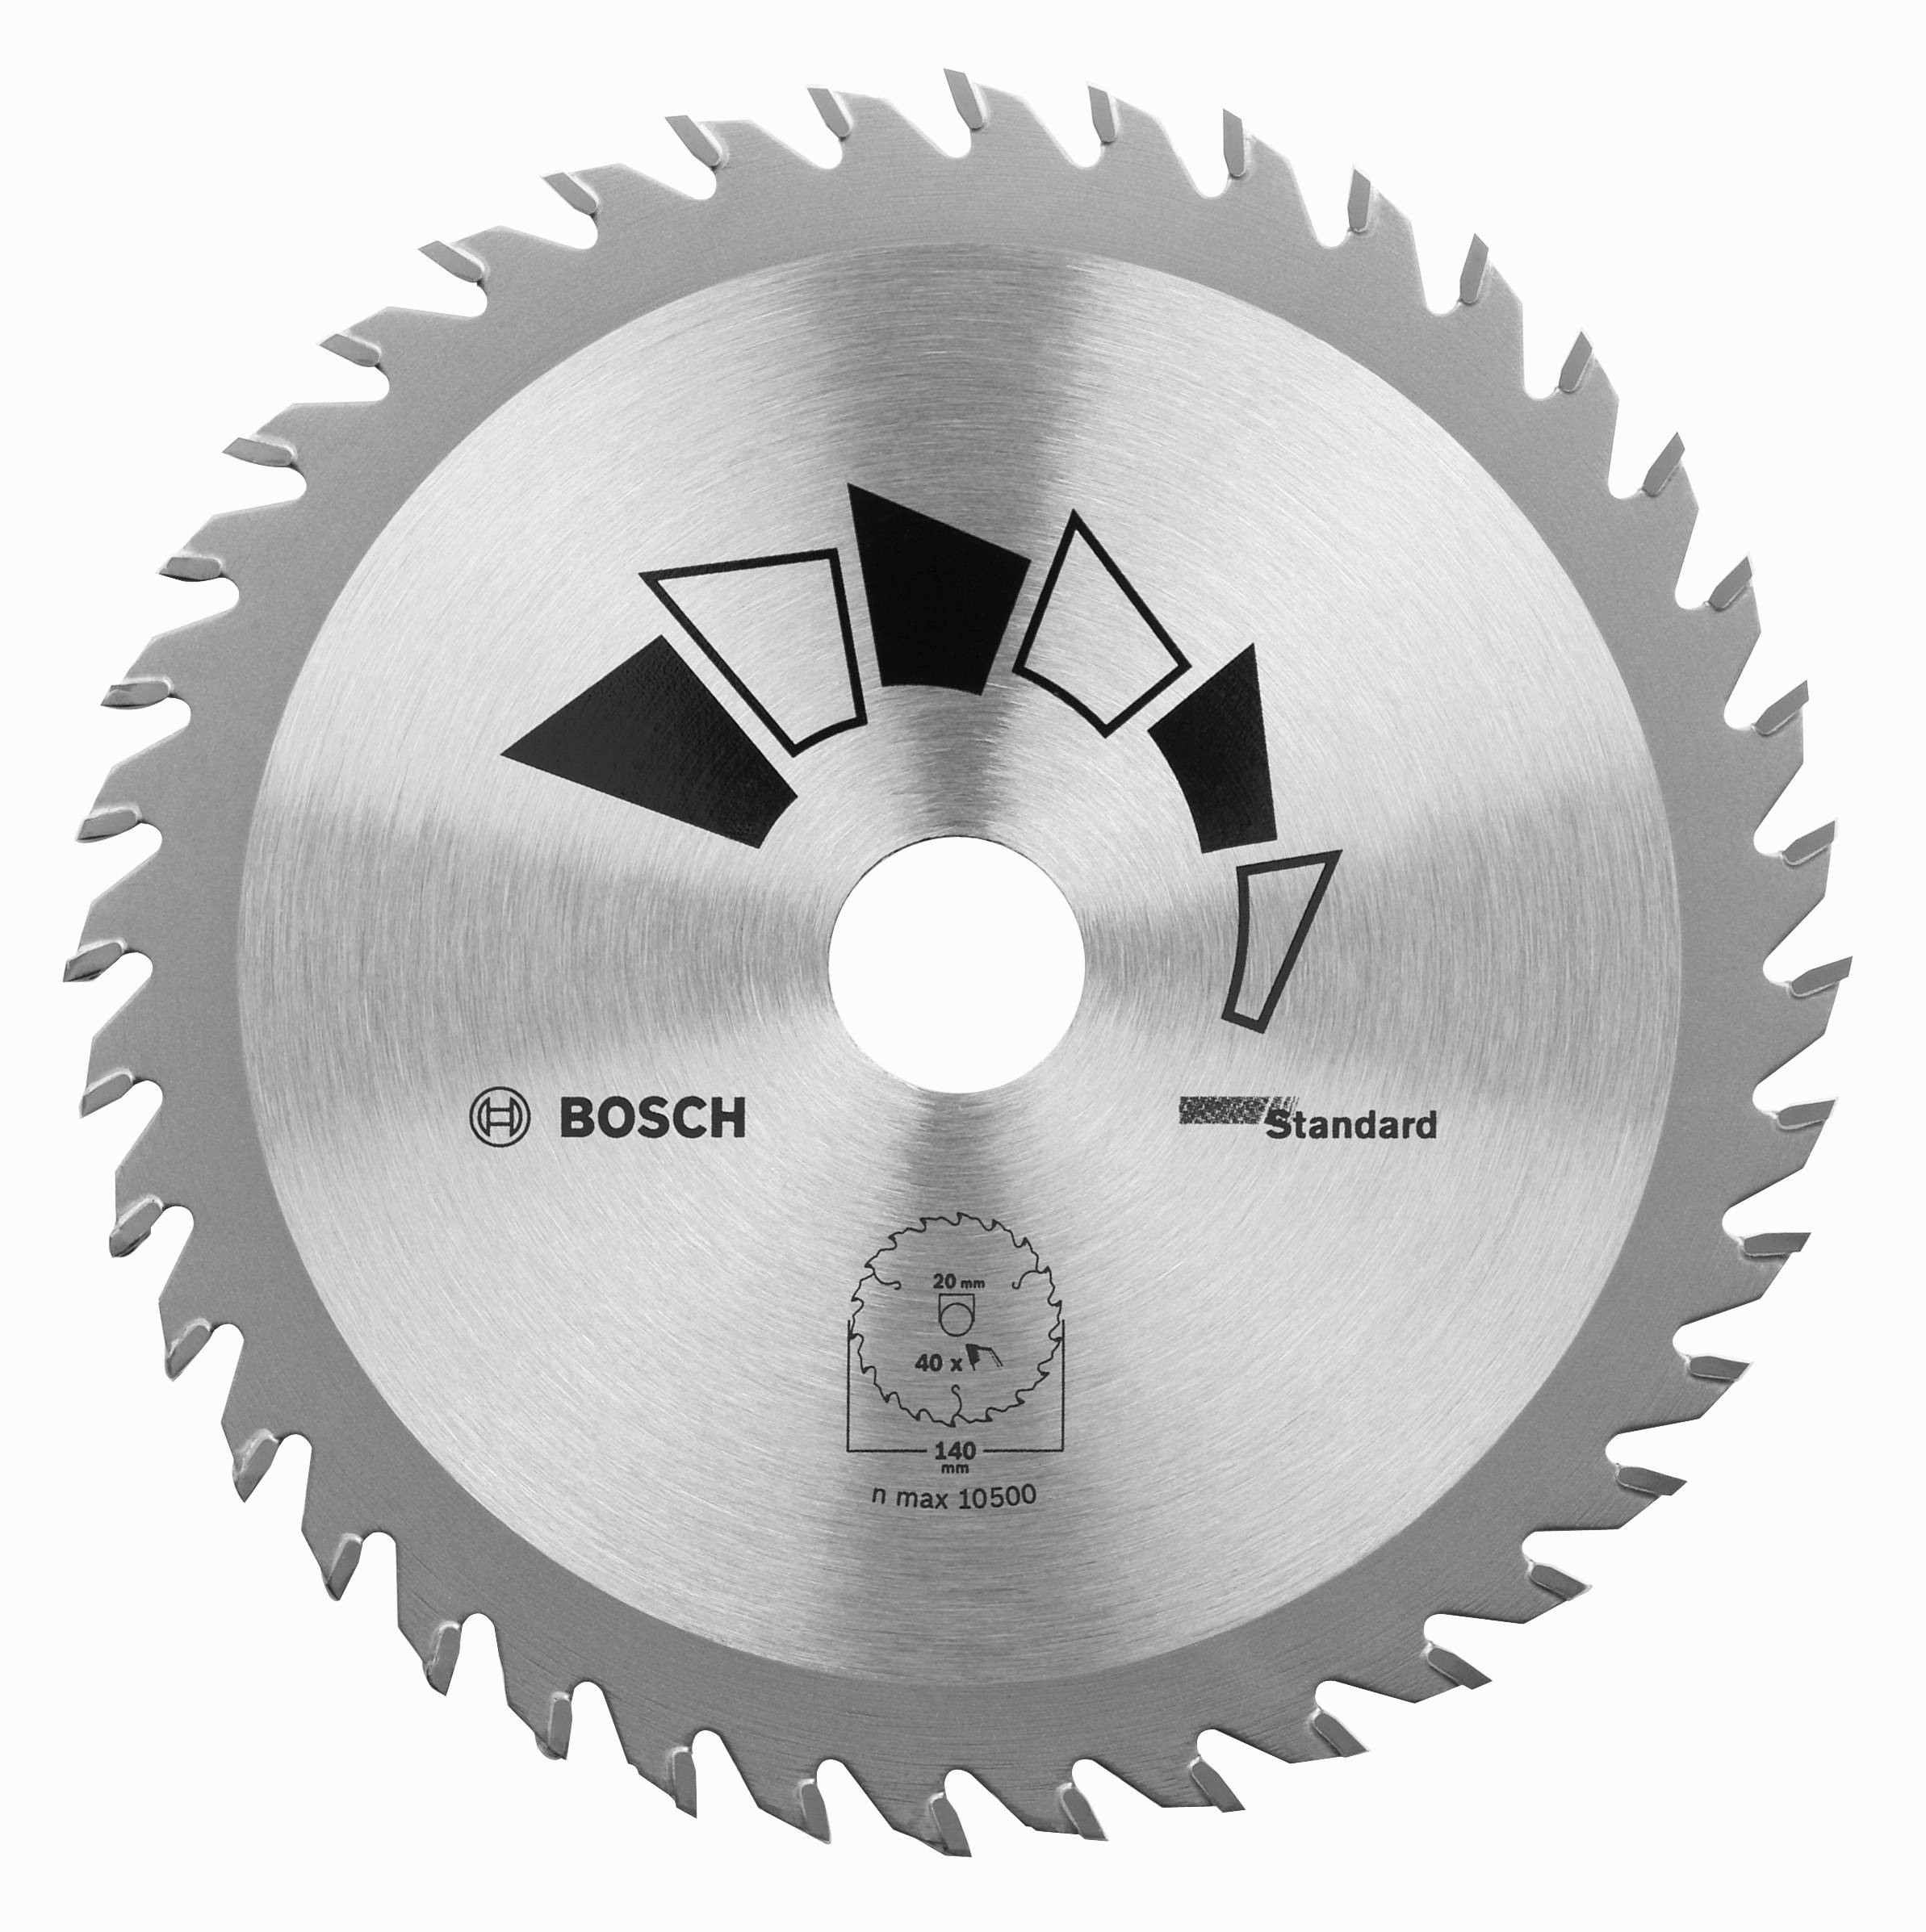 BOSCH 2 609 256 810 - Metall - 160 mm - Silber (2609256810)